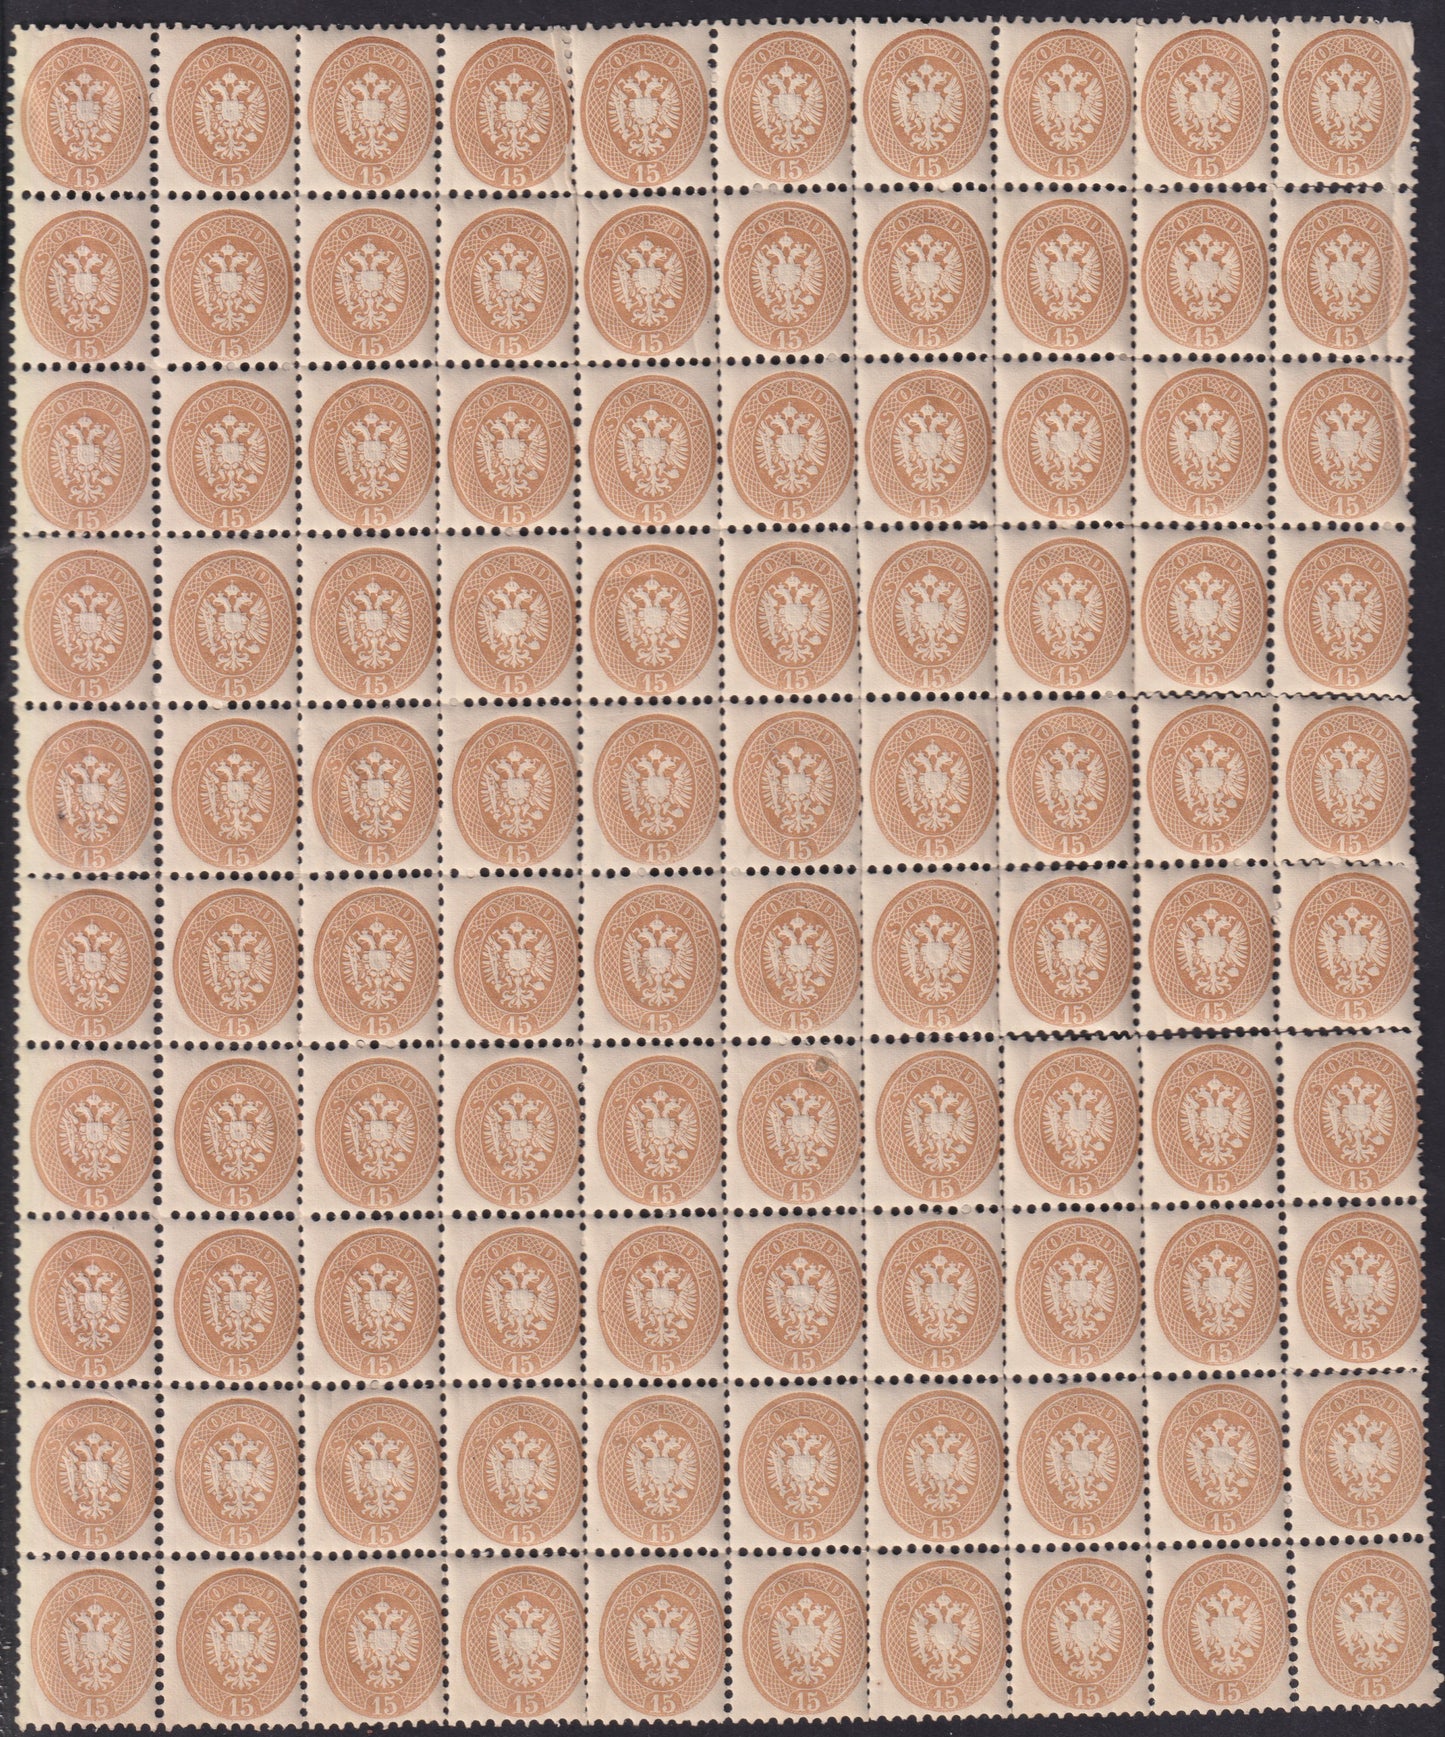 1864 - Lombardo Veneto V emissione s. 15 bruno foglio completo di 100 esemplari nuovo con gomma integra (45)